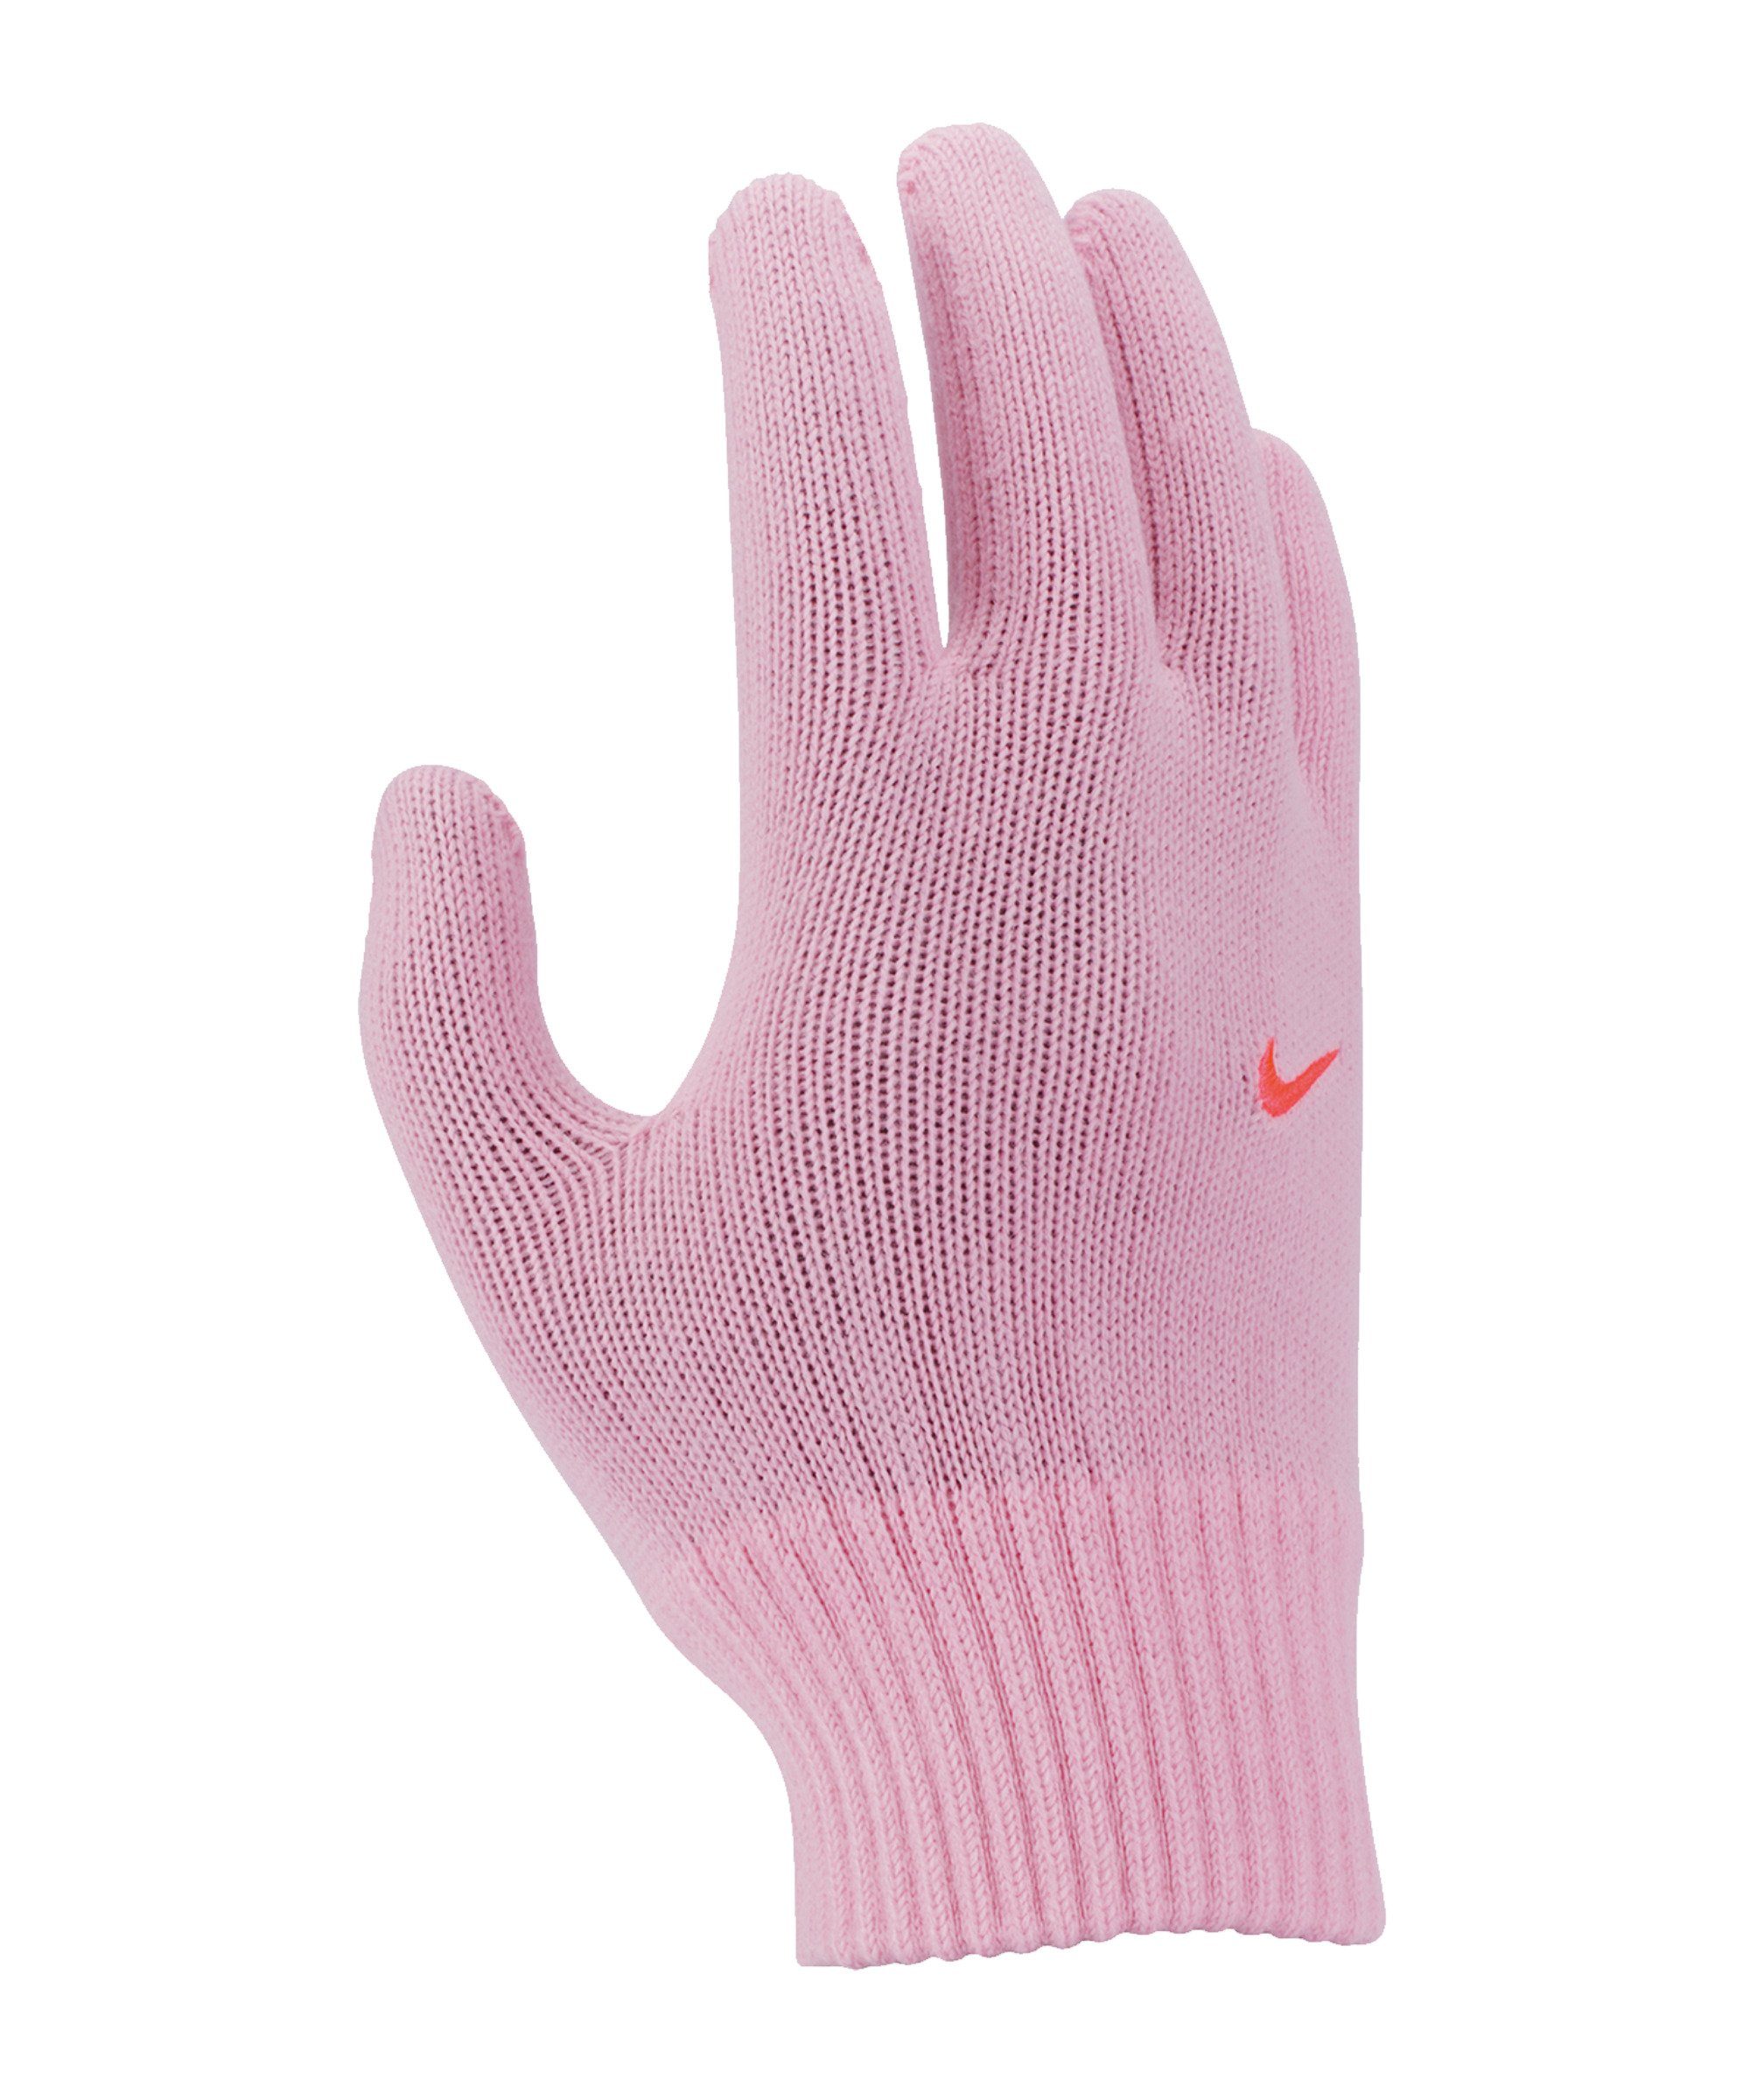 Handschuhe Knit Feldspielerhandschuhe 2.0 Swoosh Kids Nike rosarot